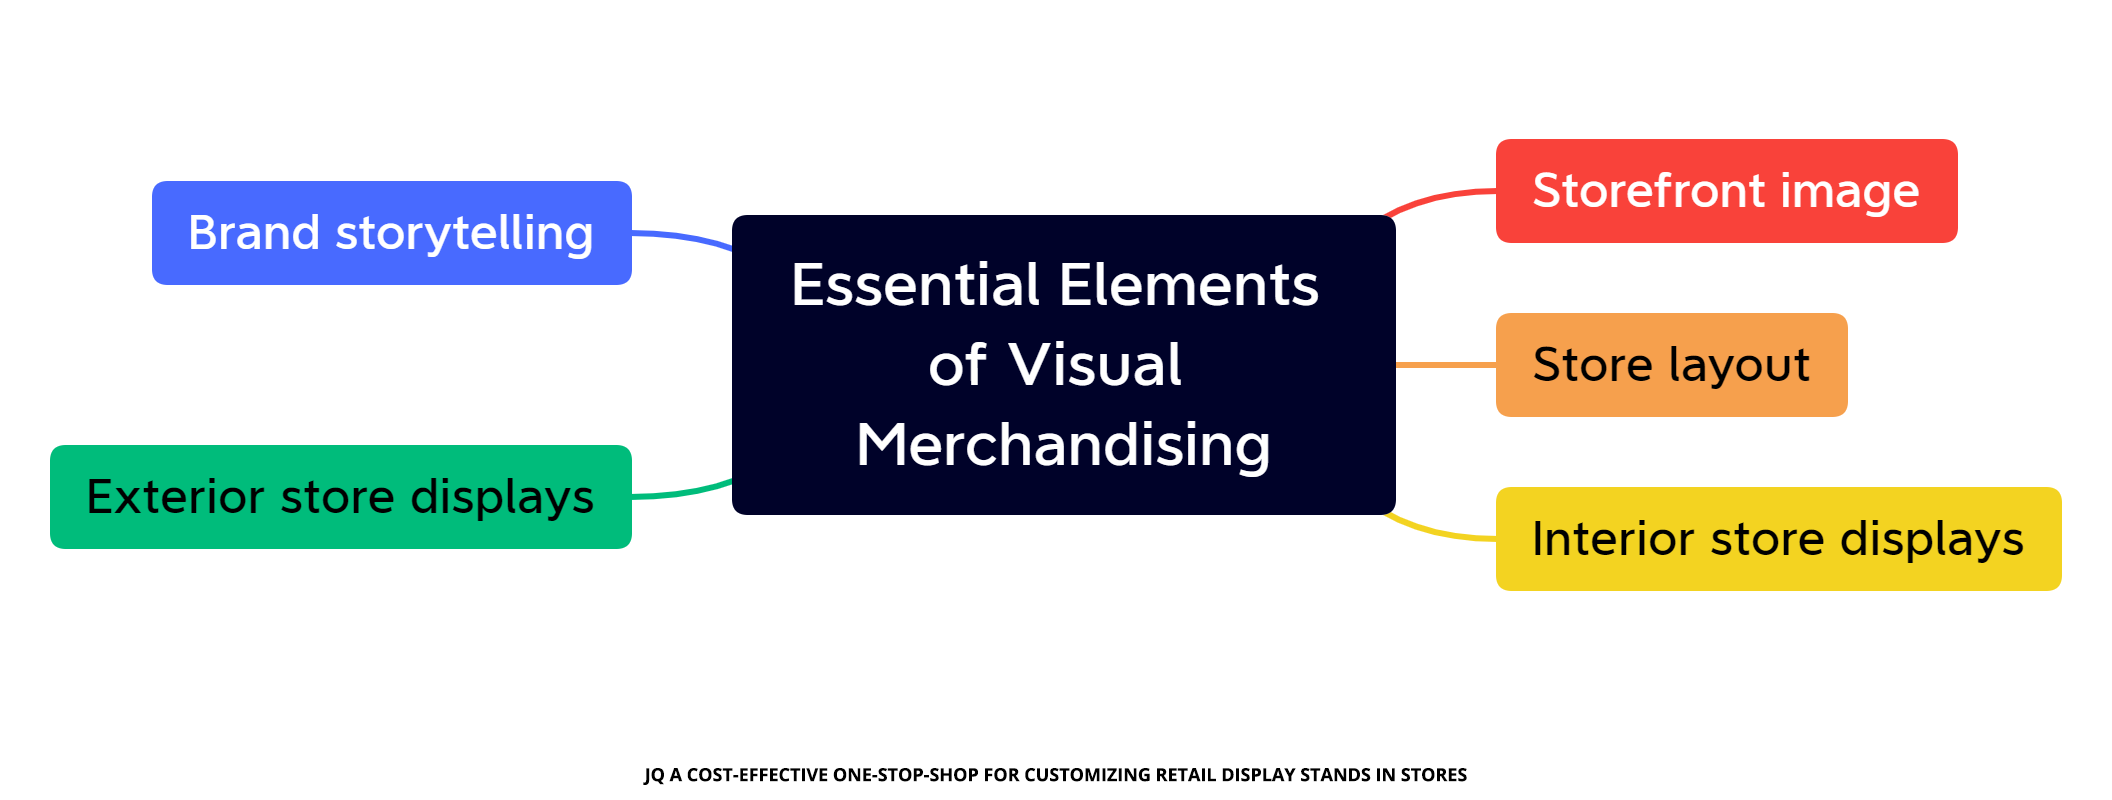 Essentiële elementen van visuele merchandising in de detailhandel